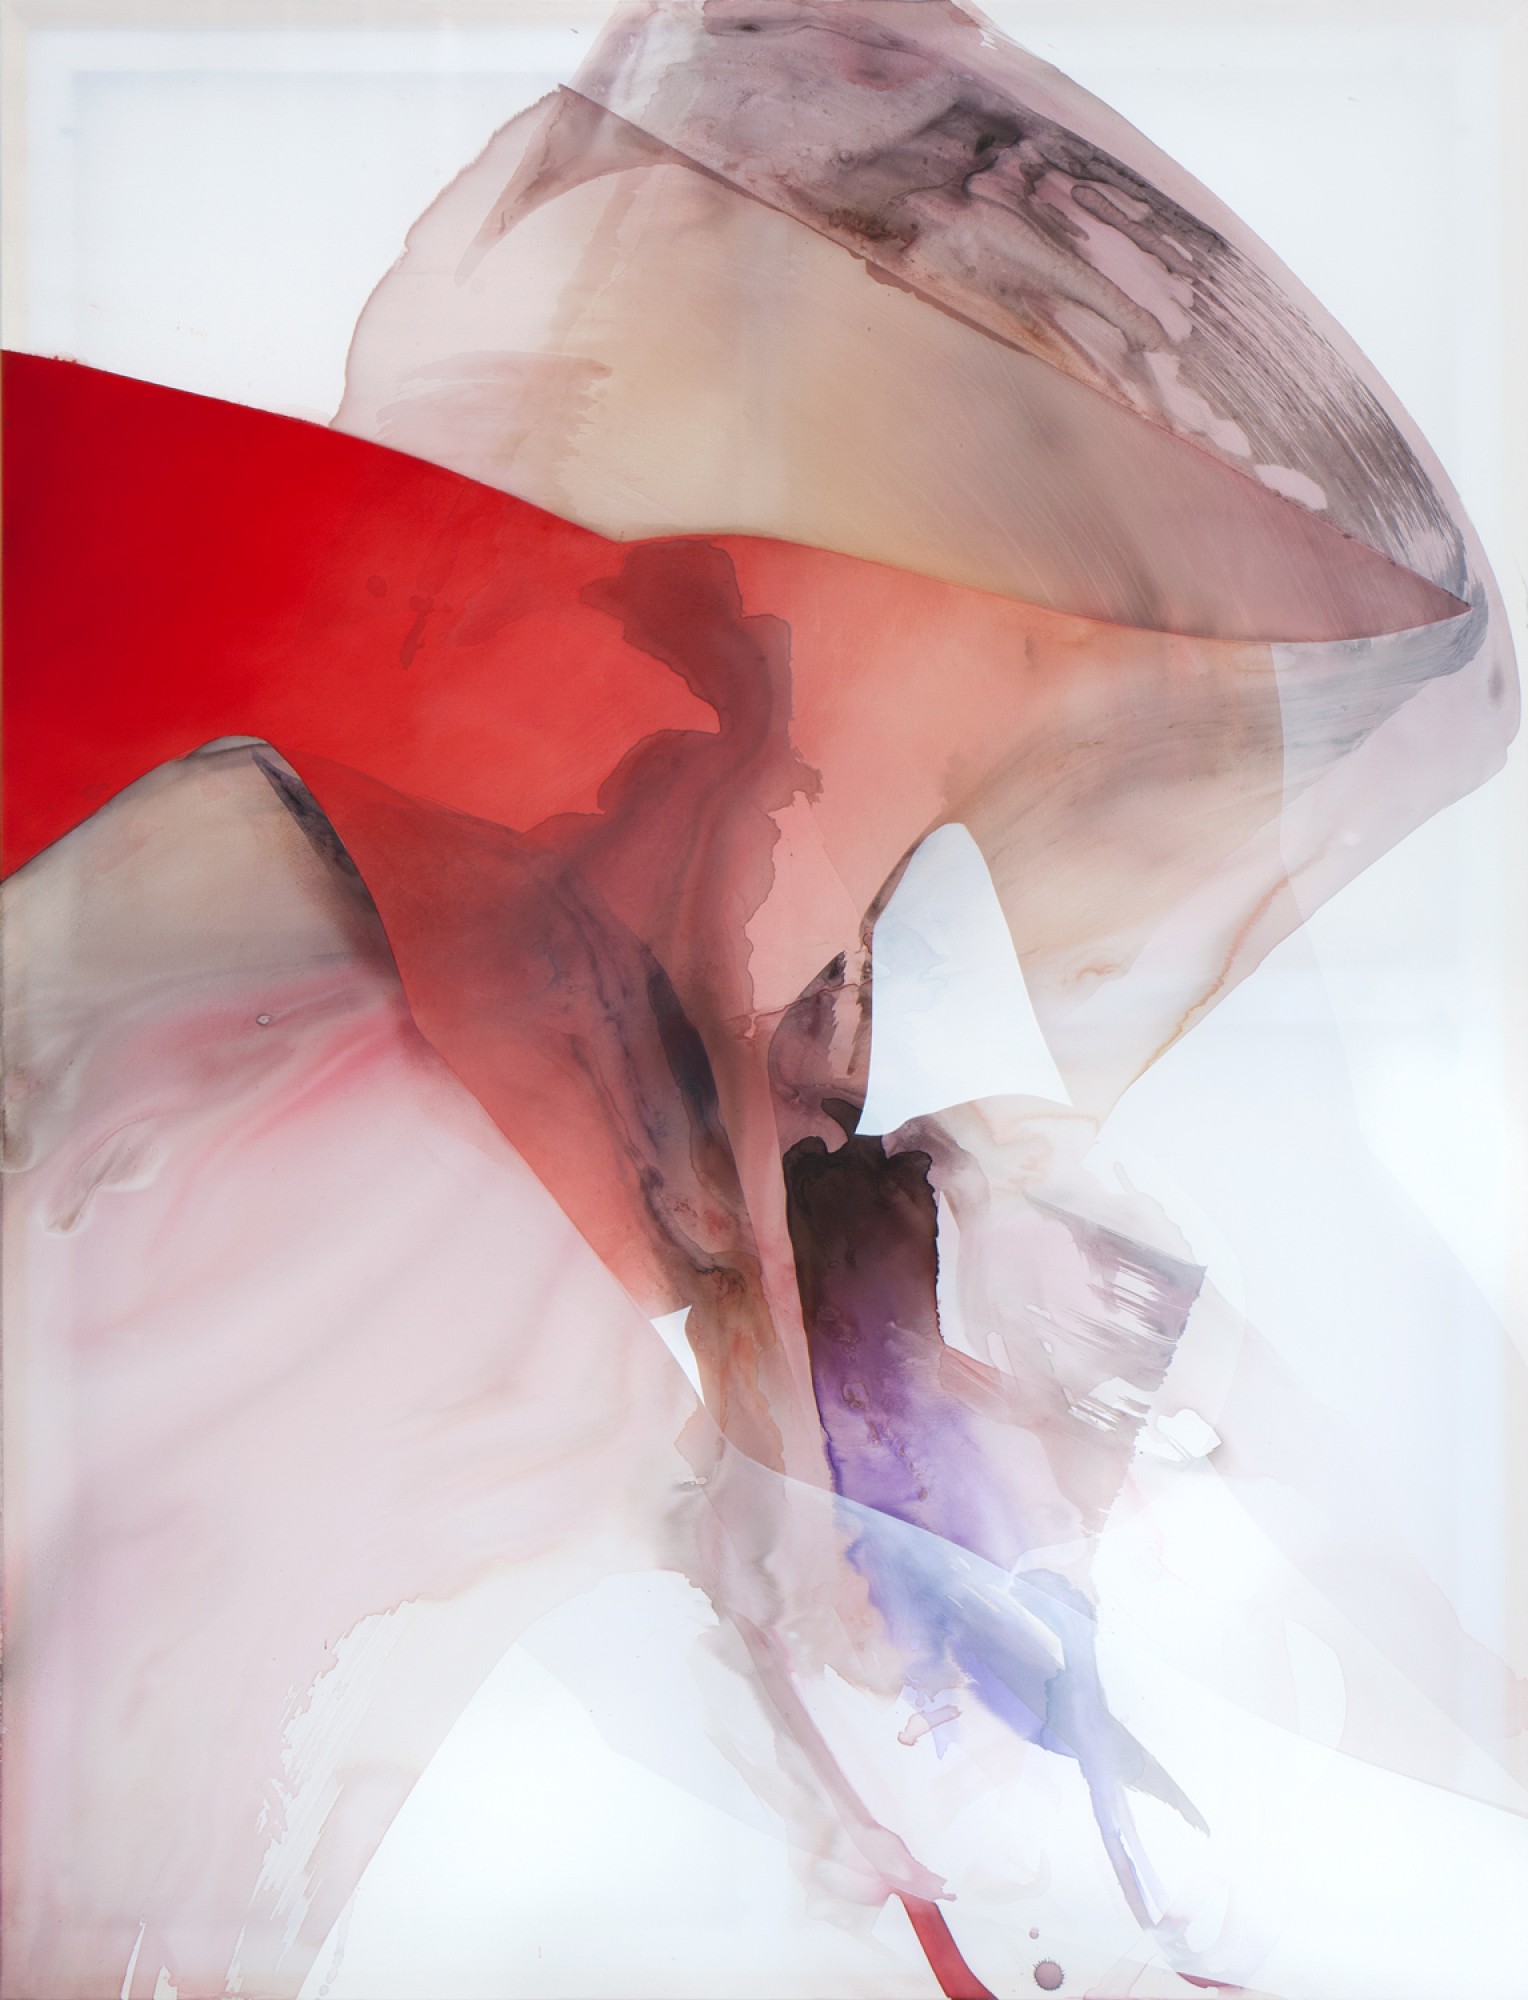 Natascha Schmitten - Stll, 2021, ink, oil, acrylic on nylon, 170 x 130 cm